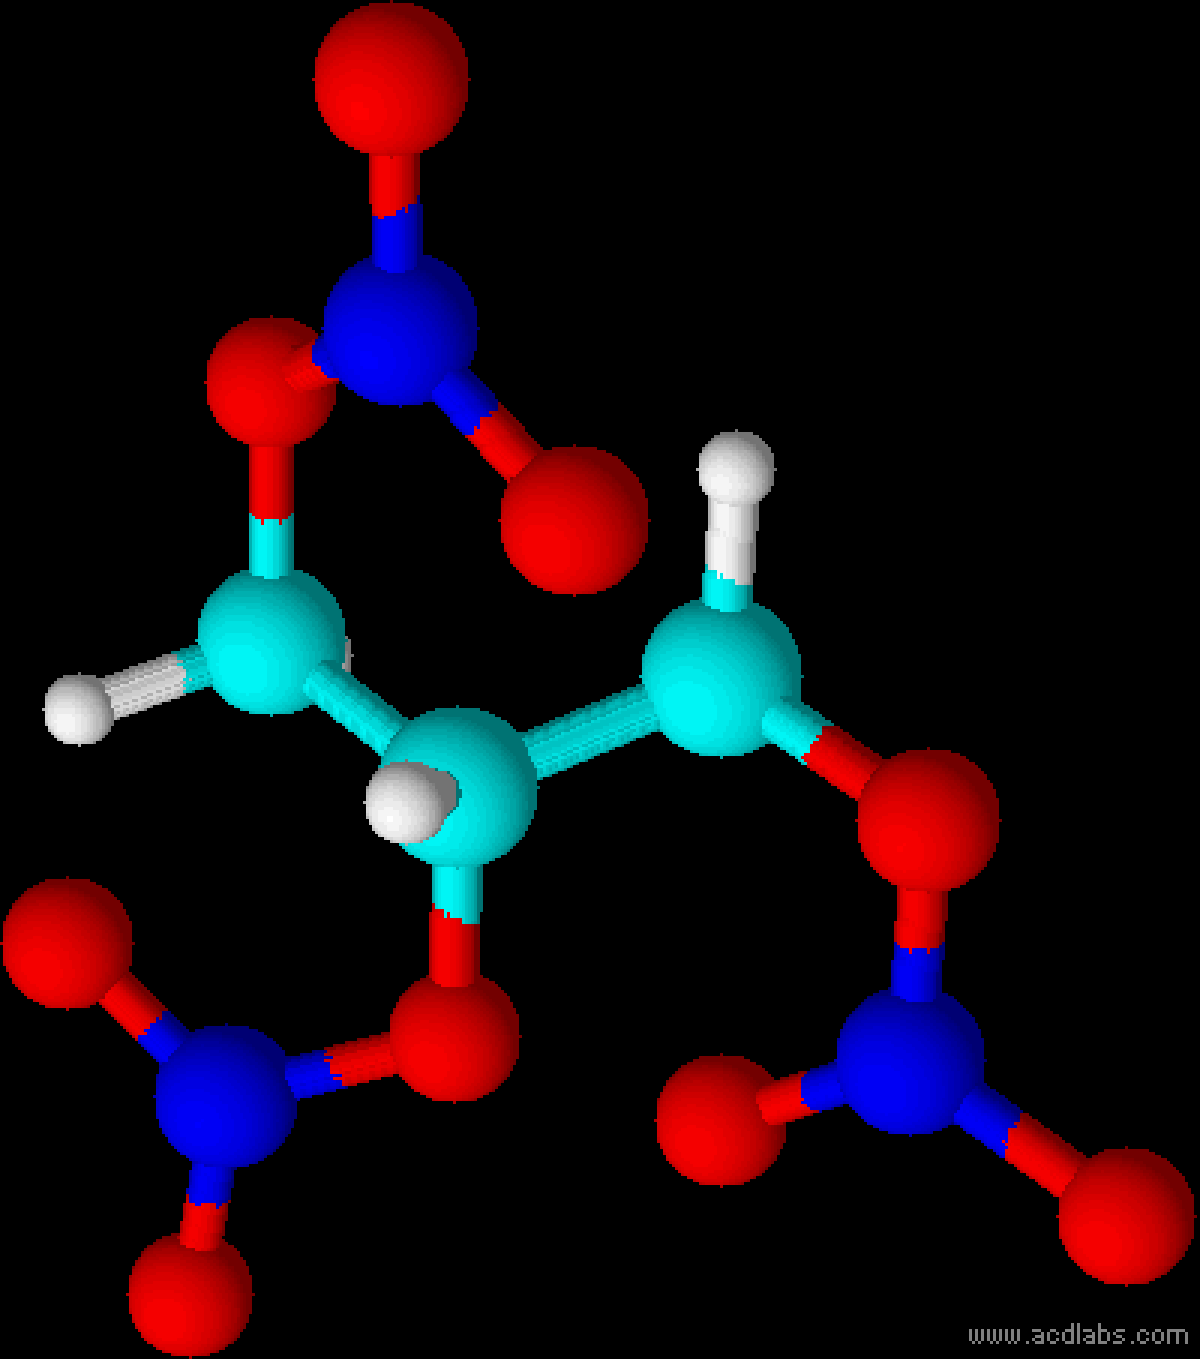 Acide nitrique fumant rouge — Wikipédia